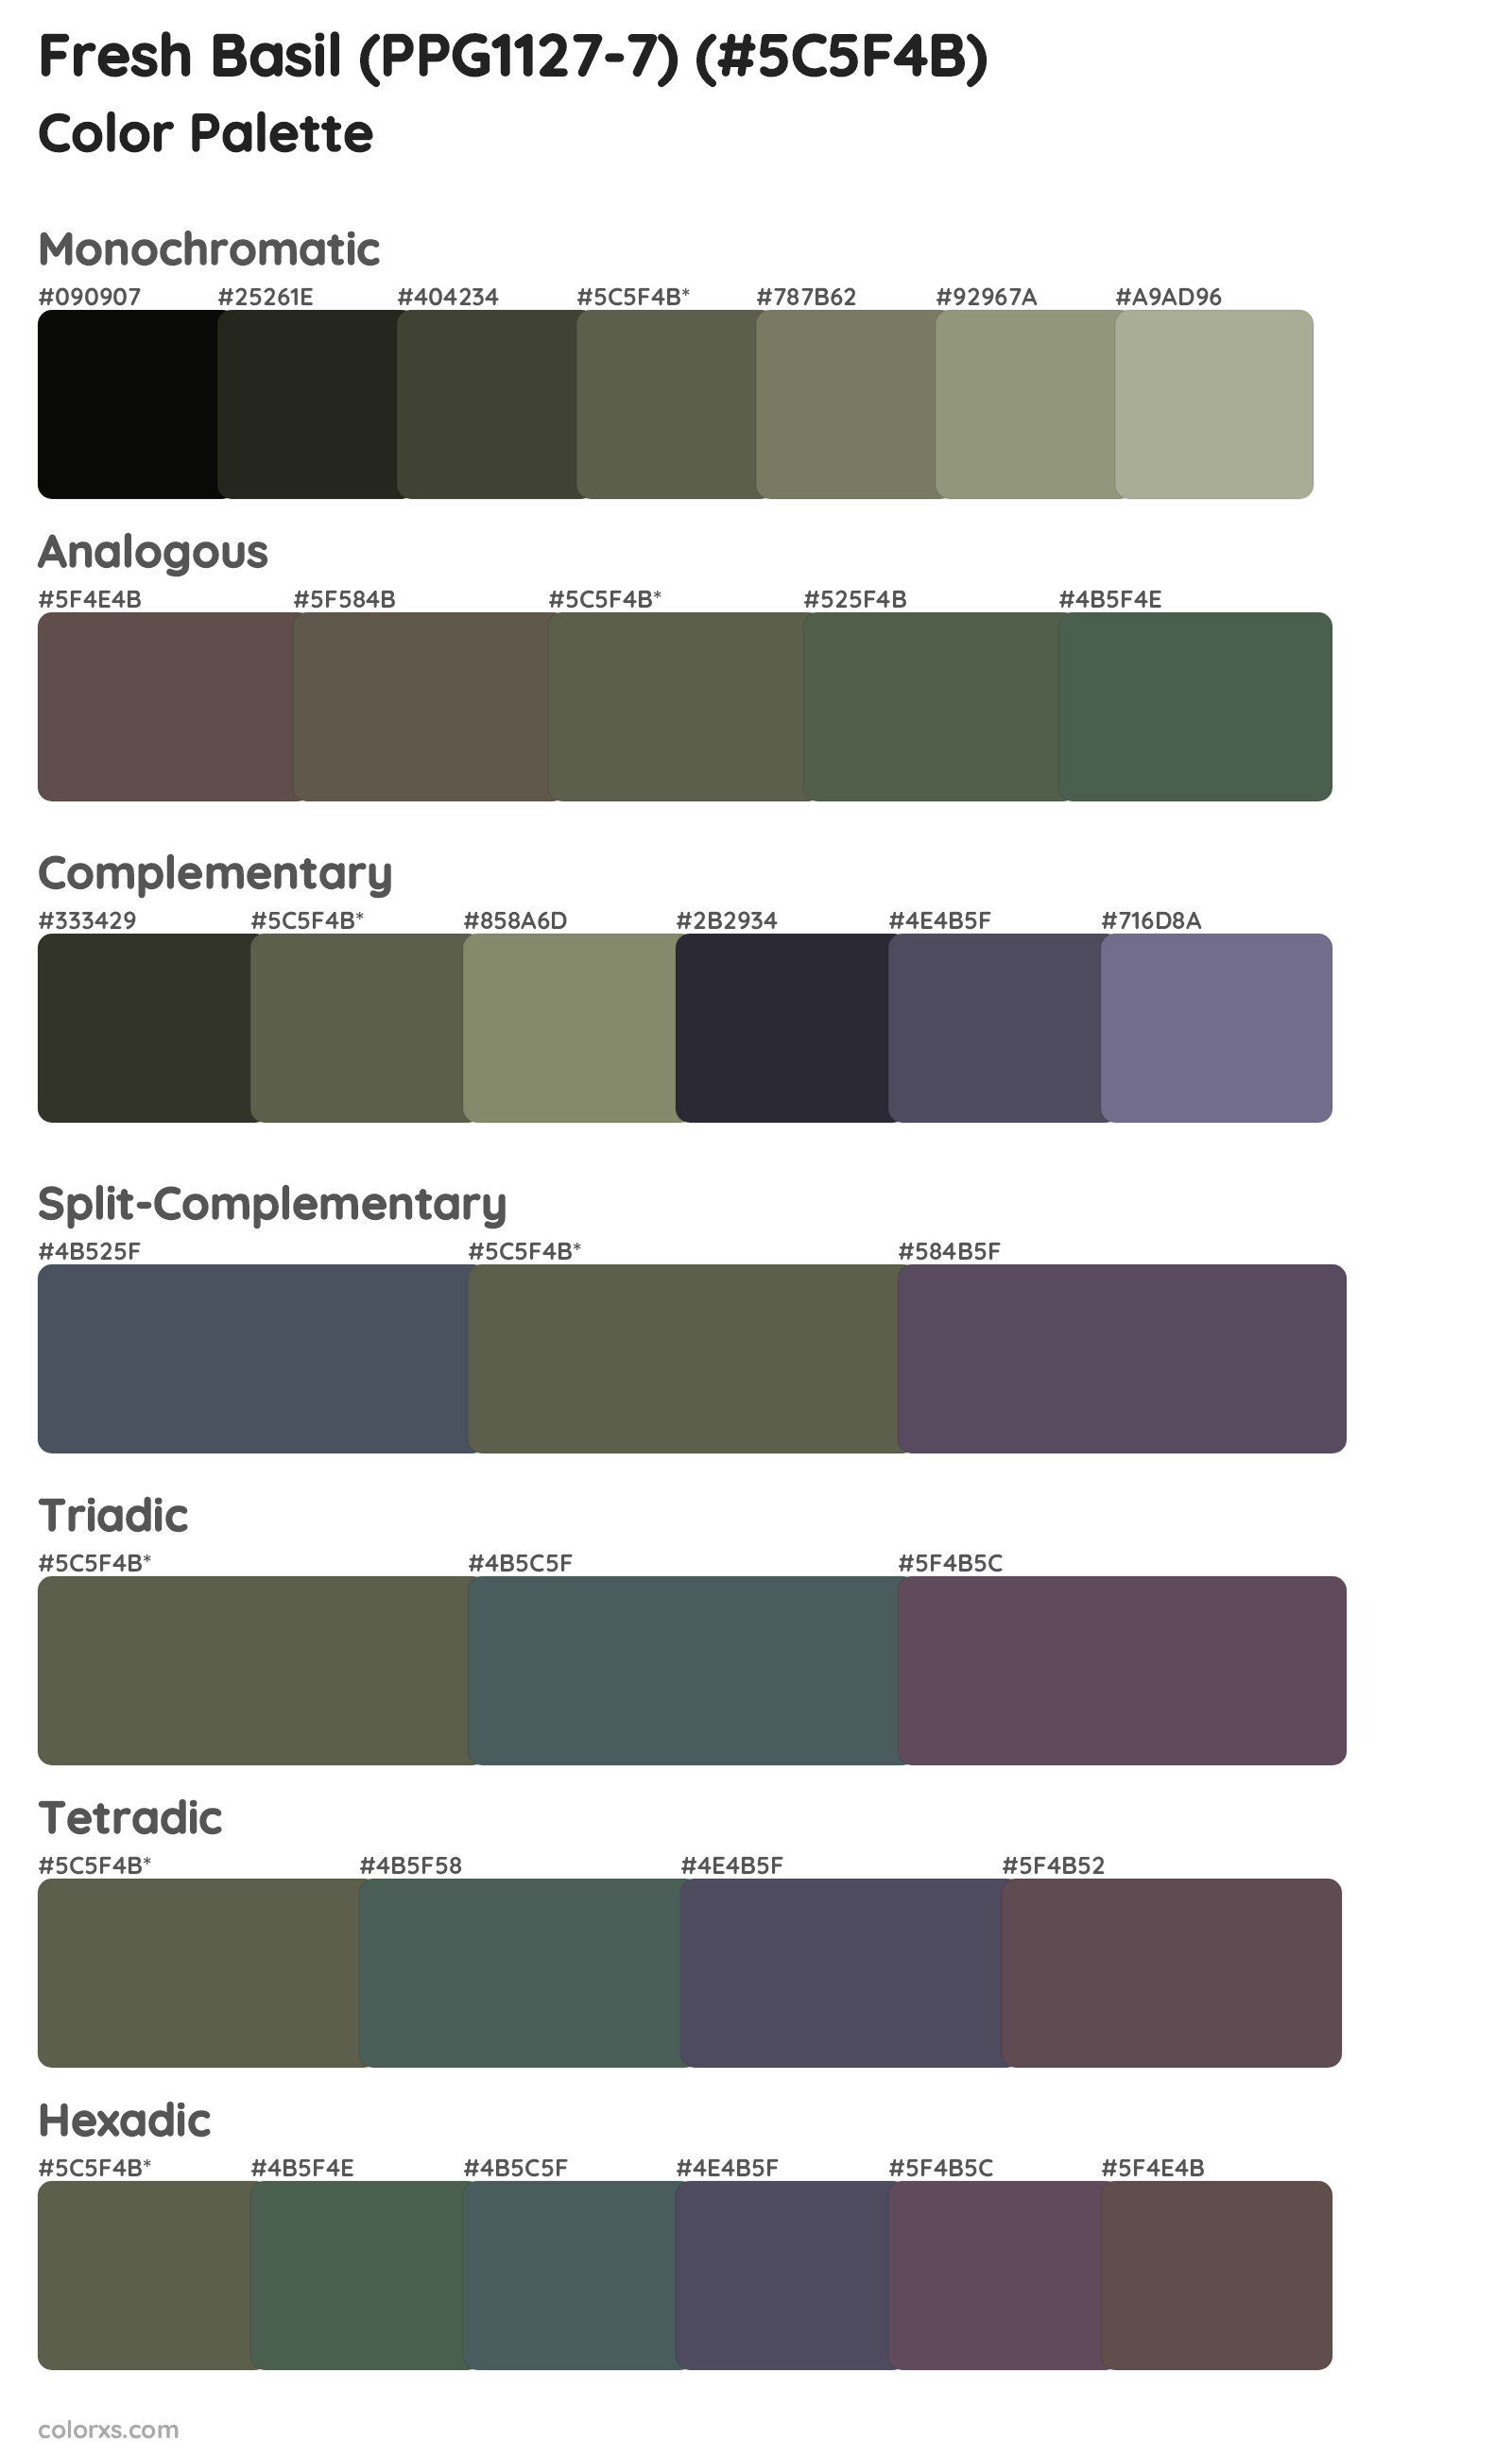 Fresh Basil (PPG1127-7) Color Scheme Palettes